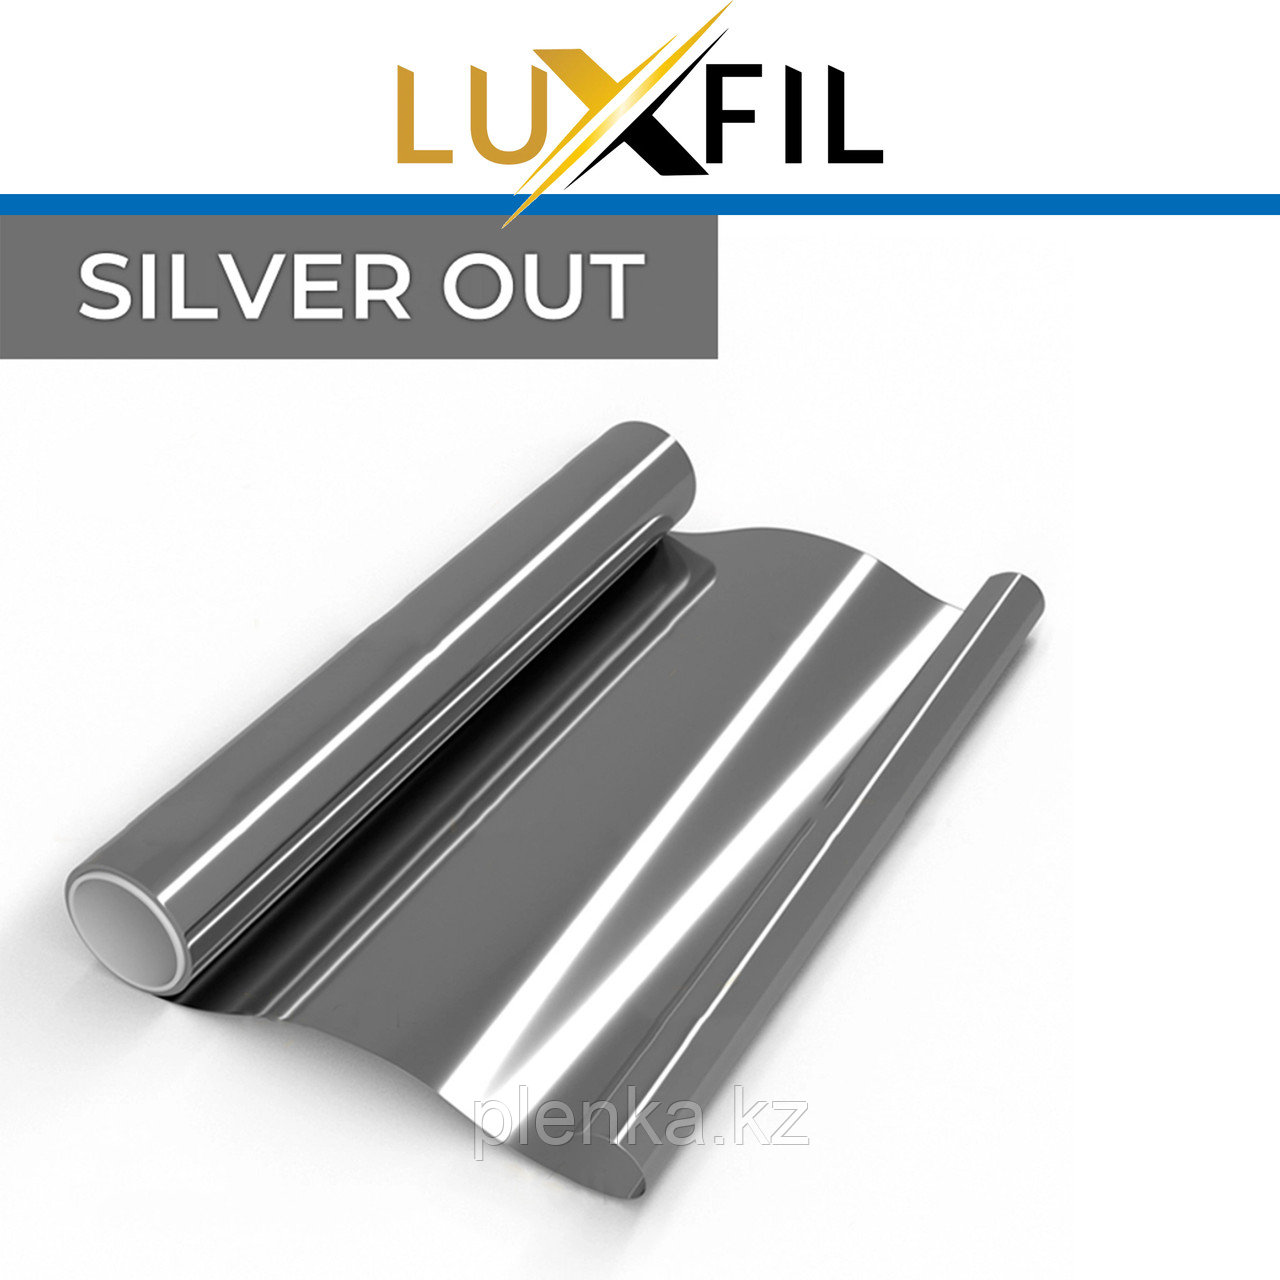 Плёнка Silver out, серебро, непрозрачная, 0% пропускание света.